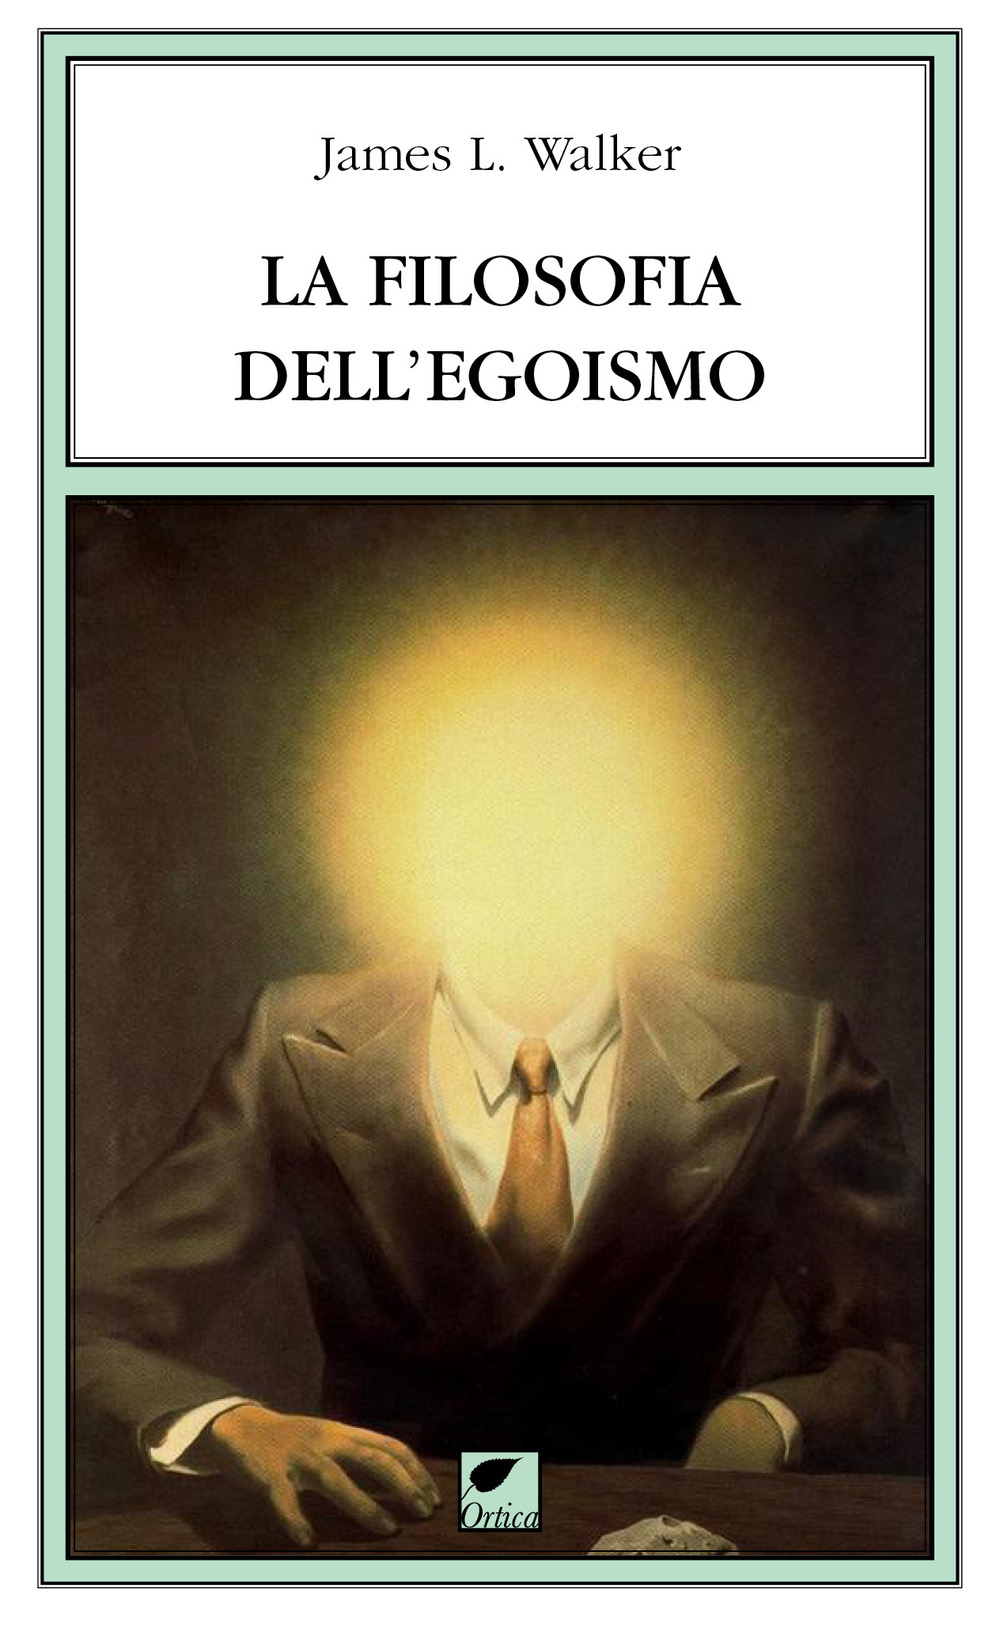 Image of La filosofia dell'egoismo